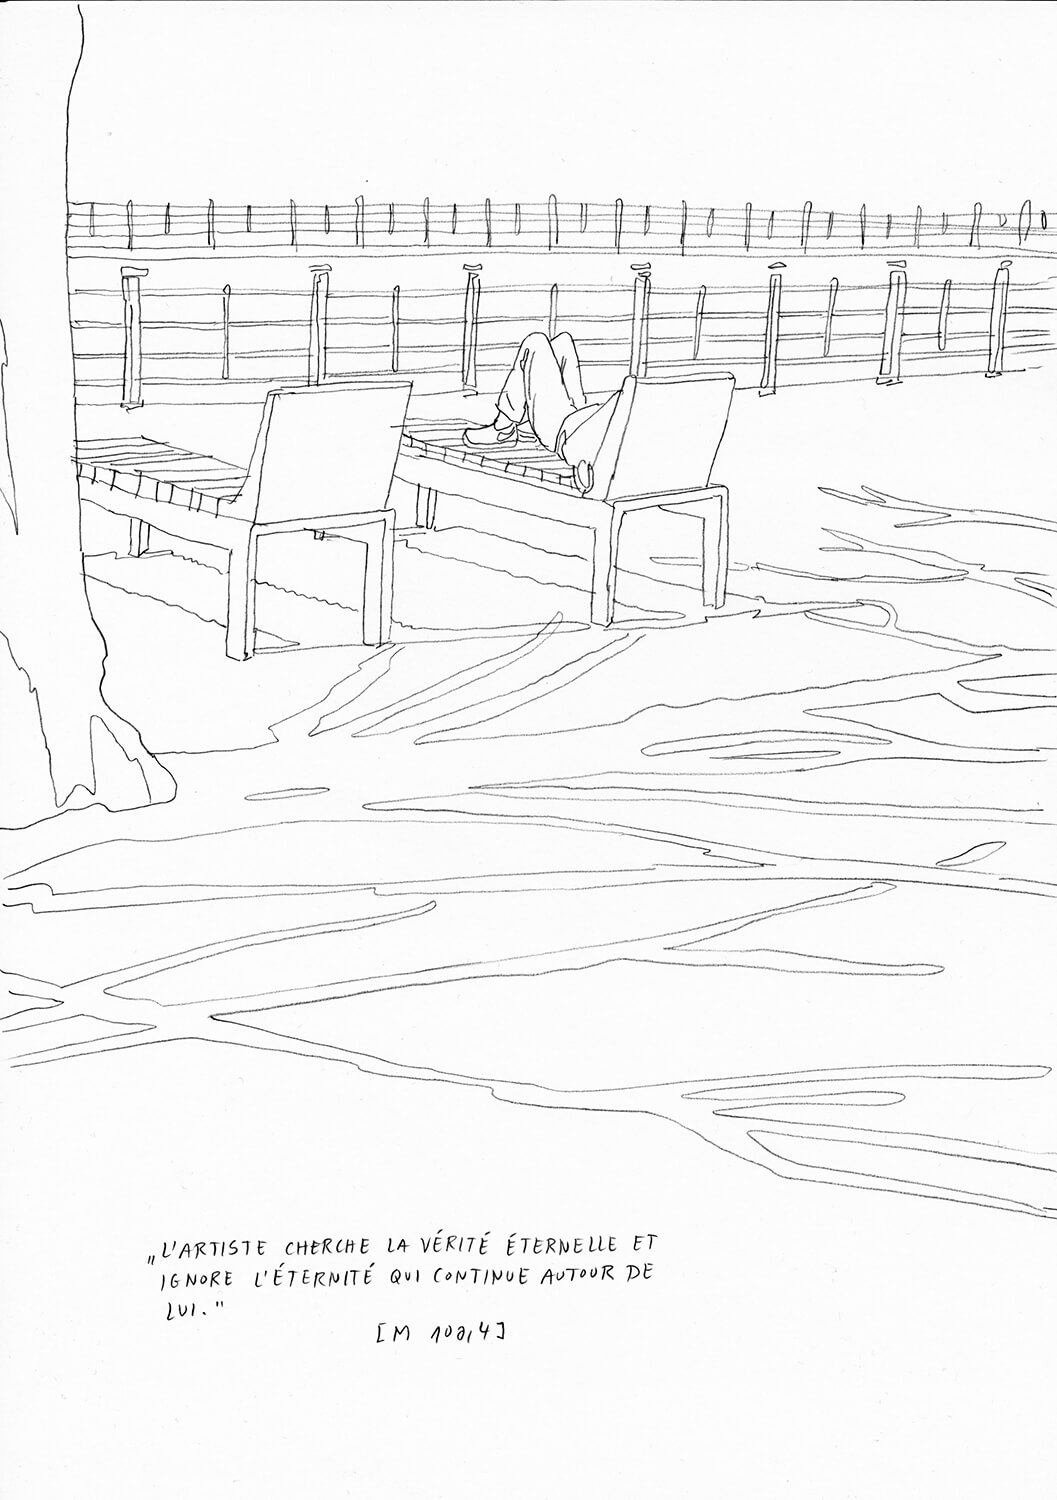 Matthias Beckmann, Passagen-Werk (83), 2019/2020, pencil on paper, 29.7 x 21 cm